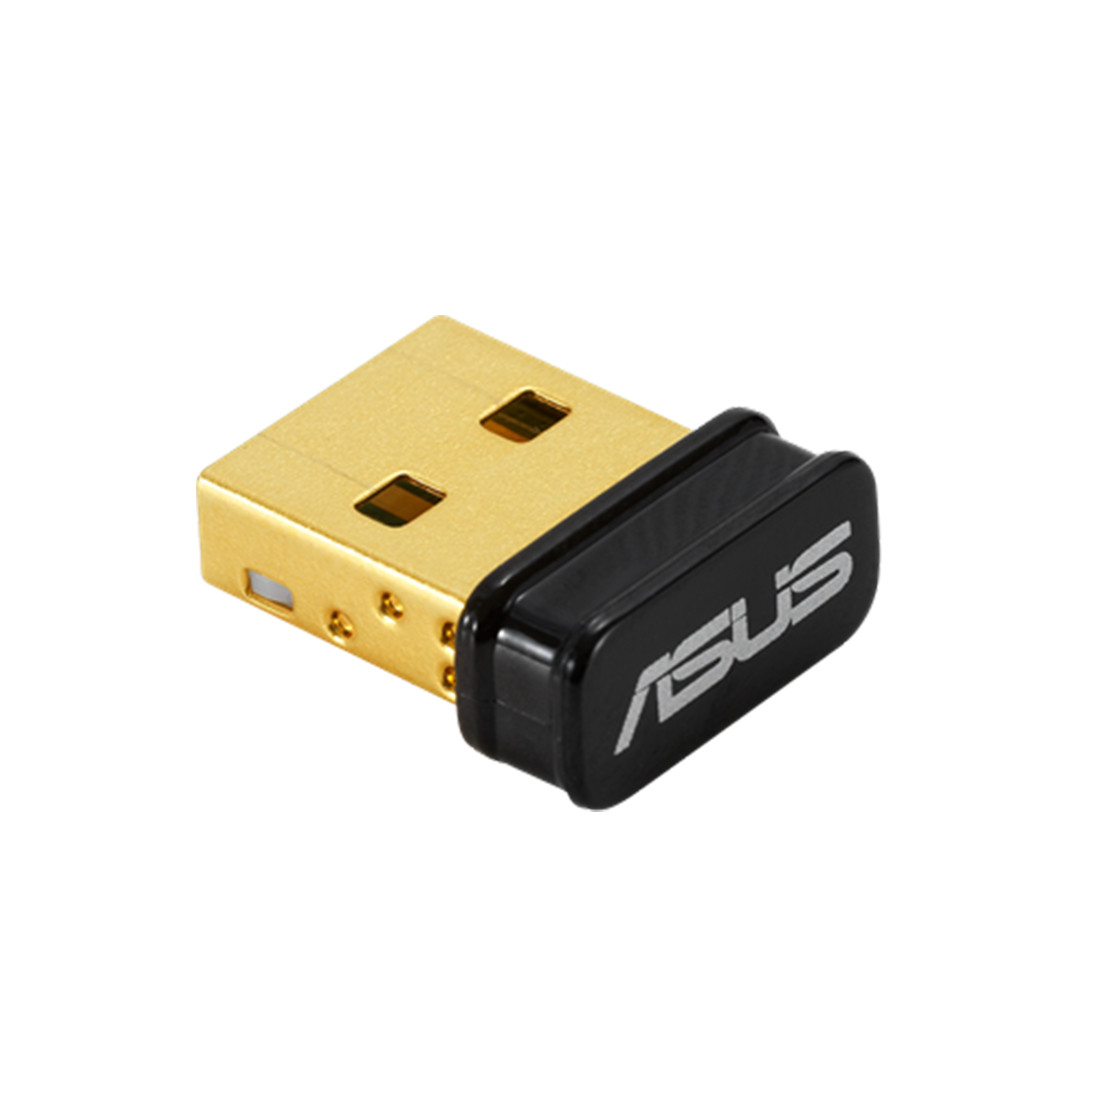 Сетевой адаптер ASUS USB-BT500, фото 1